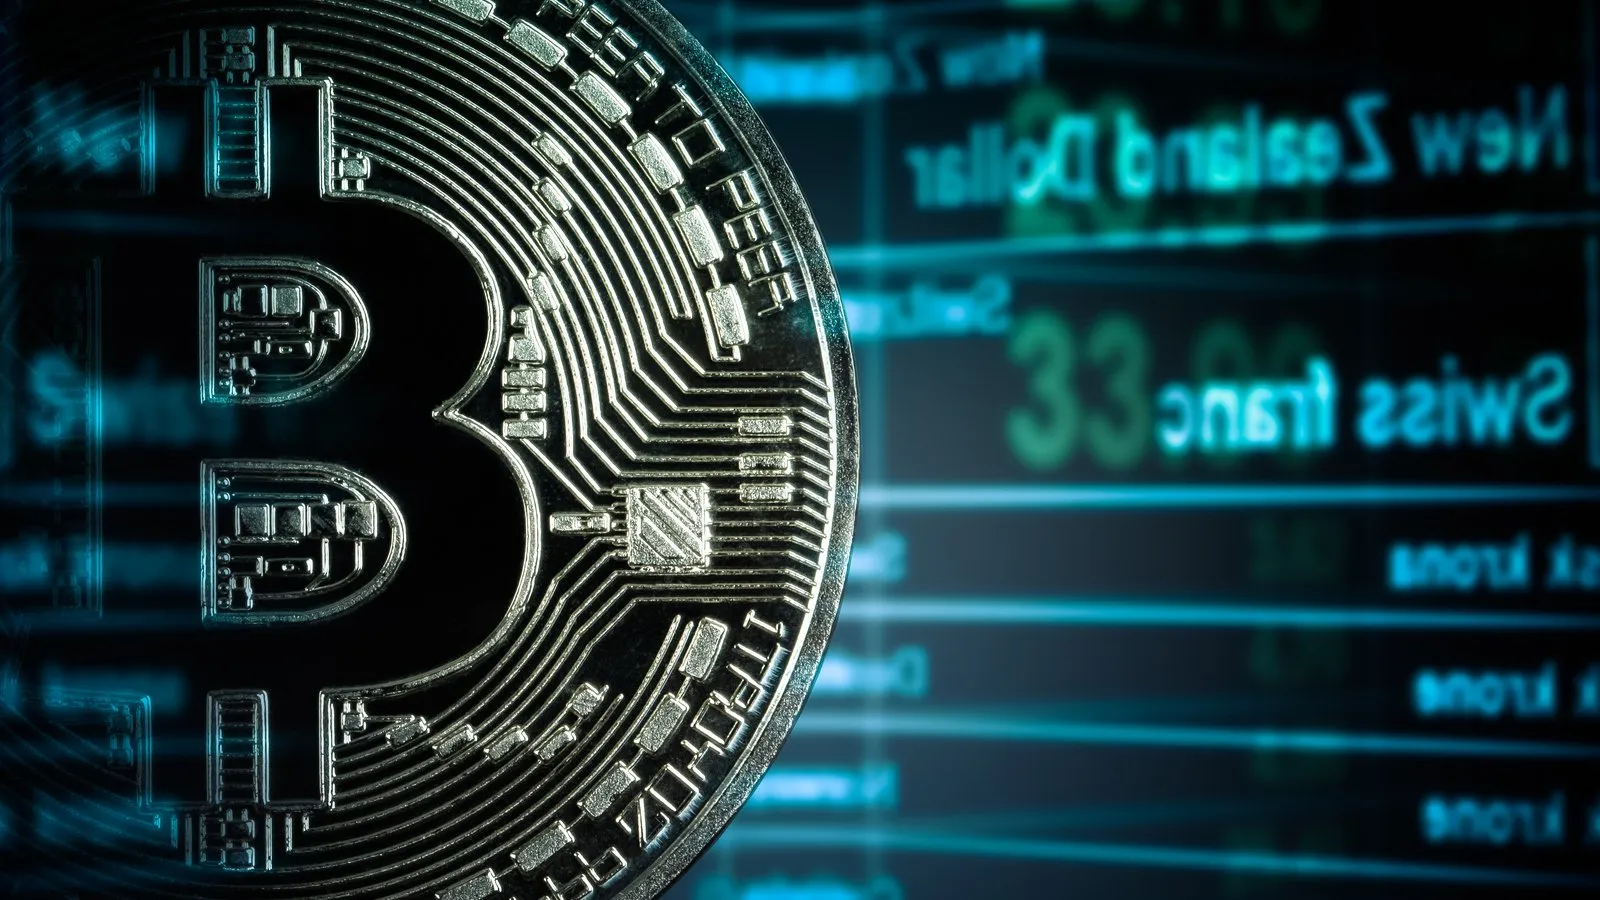 Futuros de Bitcoin. Image: Shutterstock